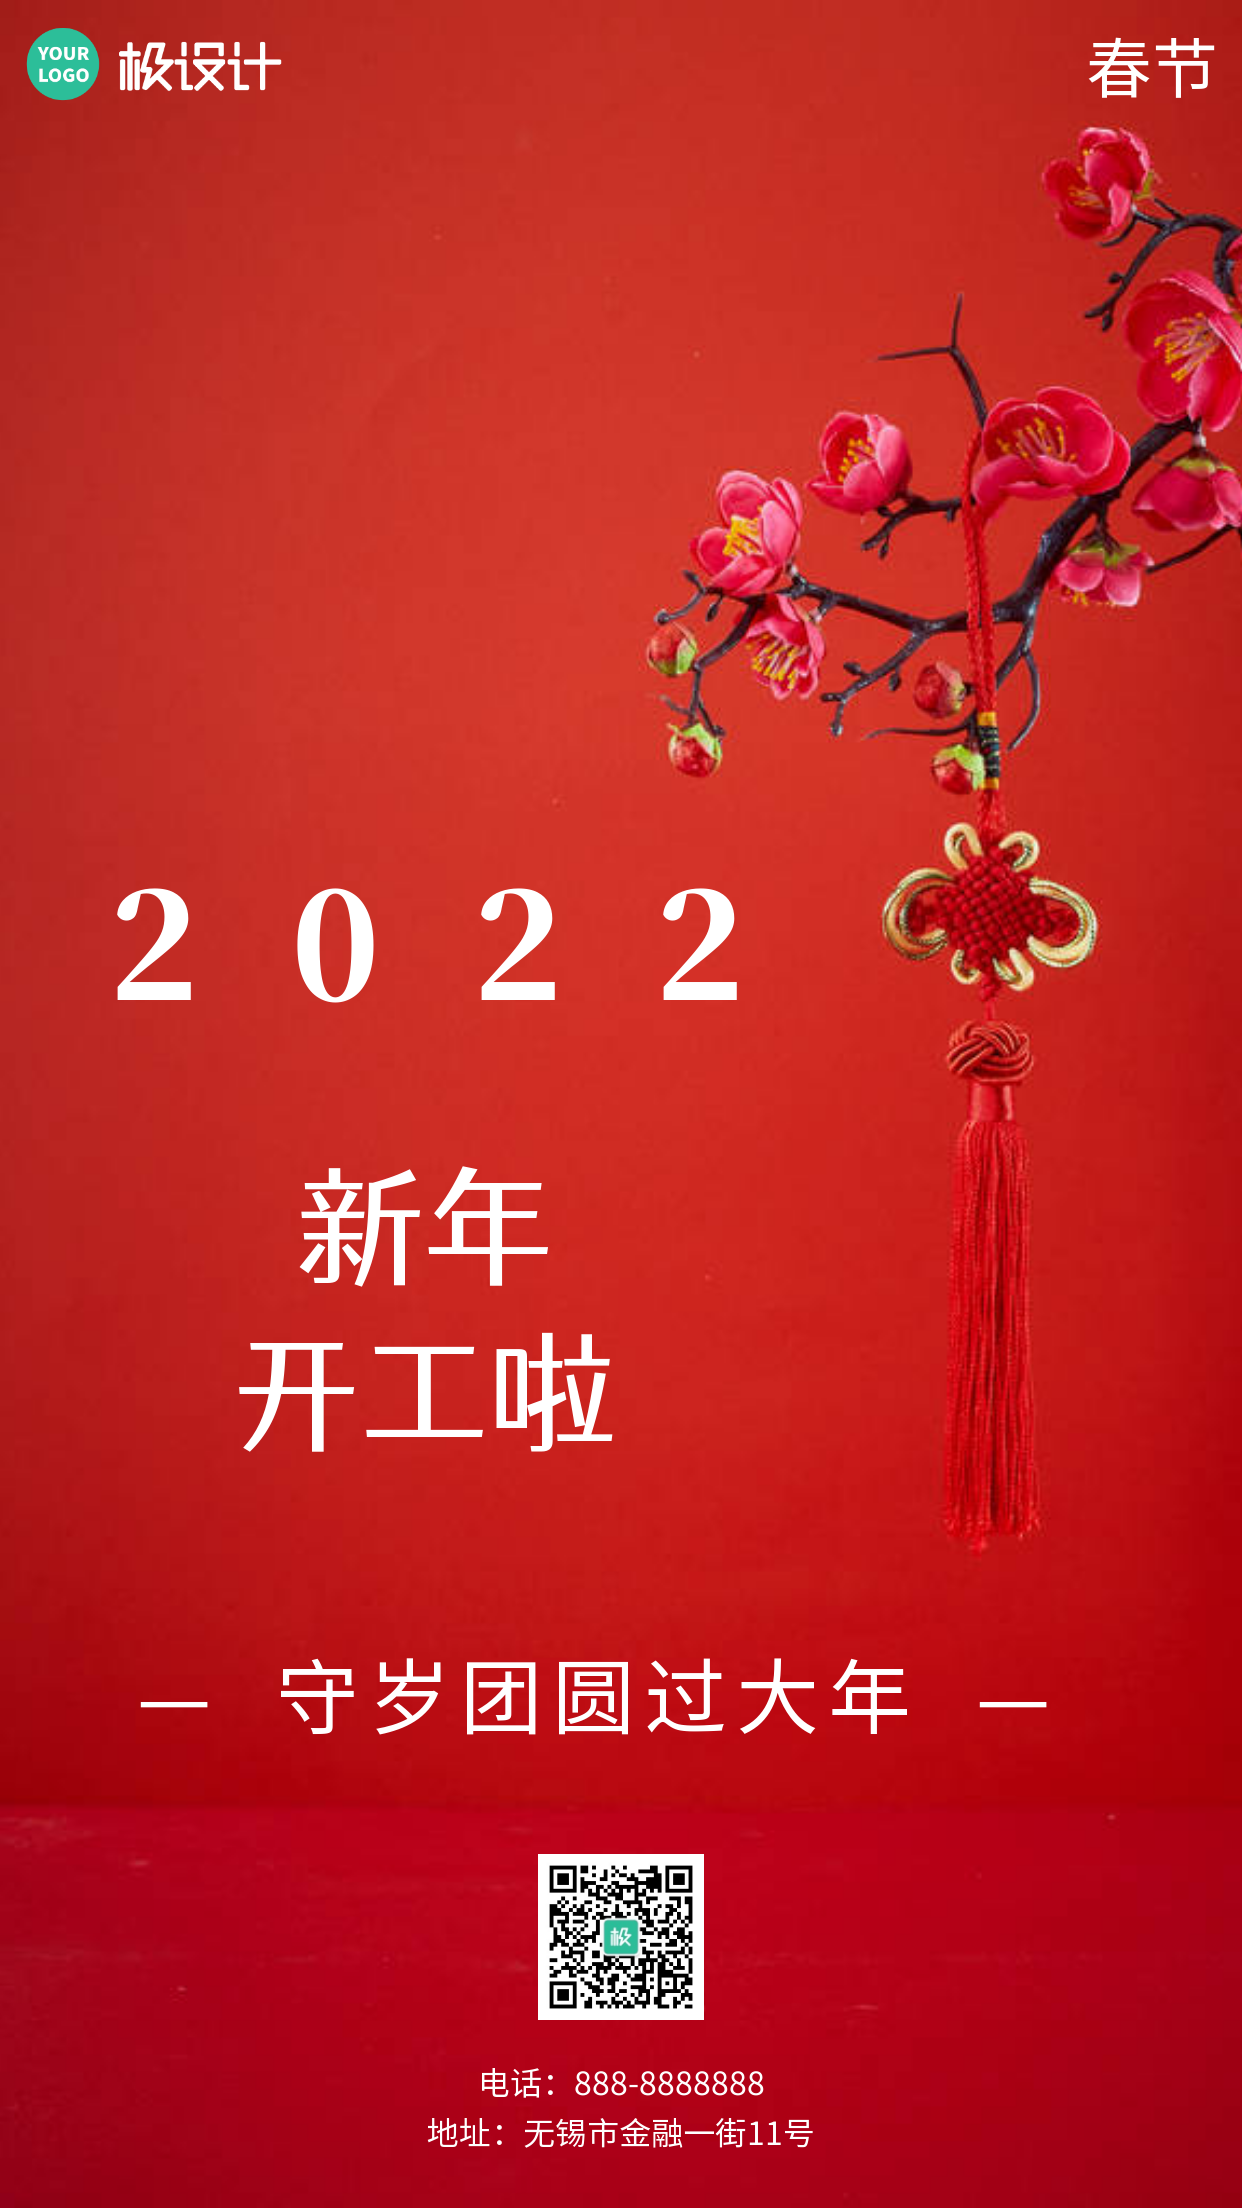 简约风格2022春节后开工顺利宣传手机海报